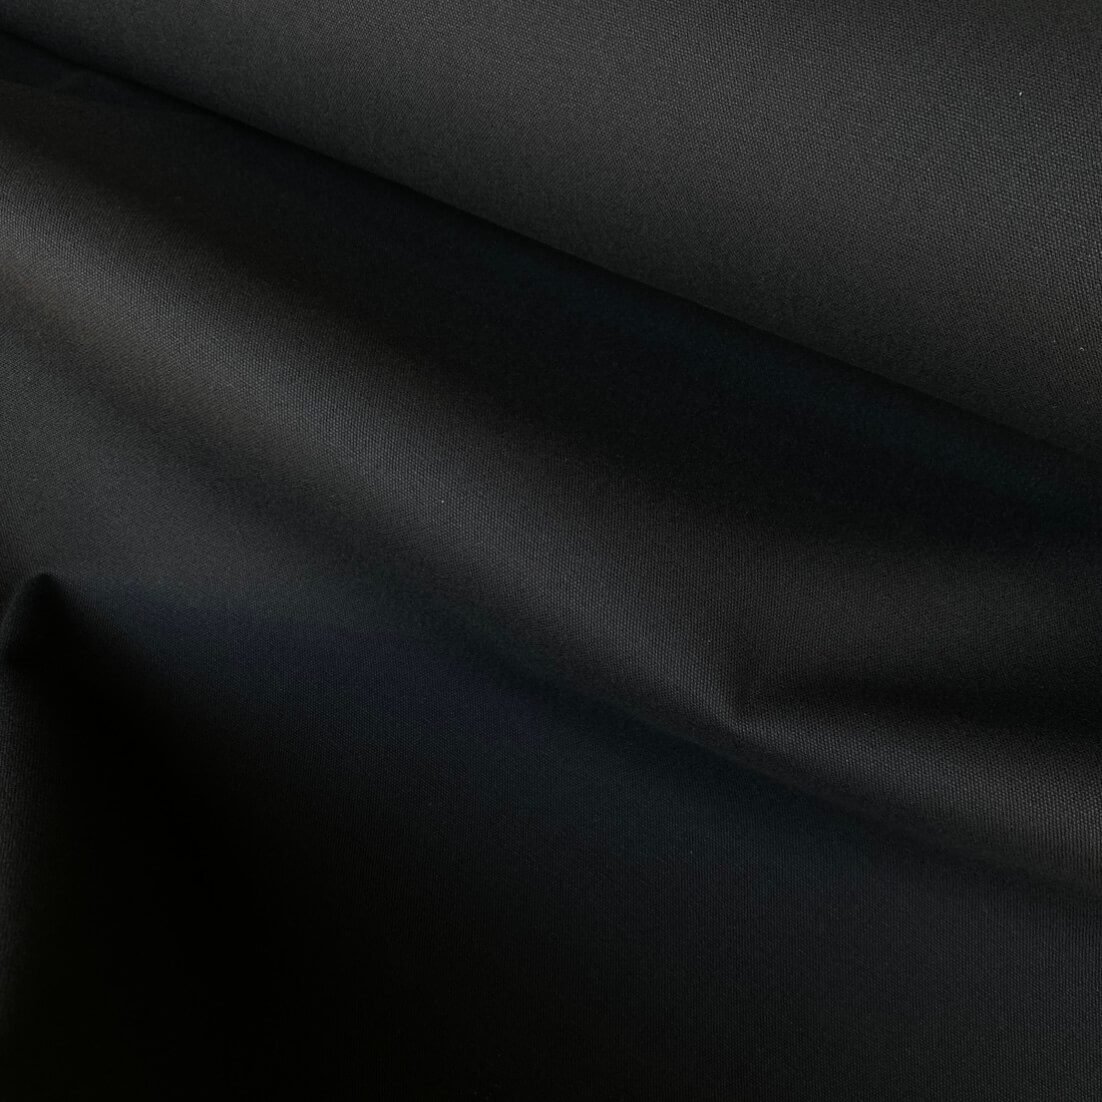 Black Cotton Canvas. 100% cotton fabric in black.